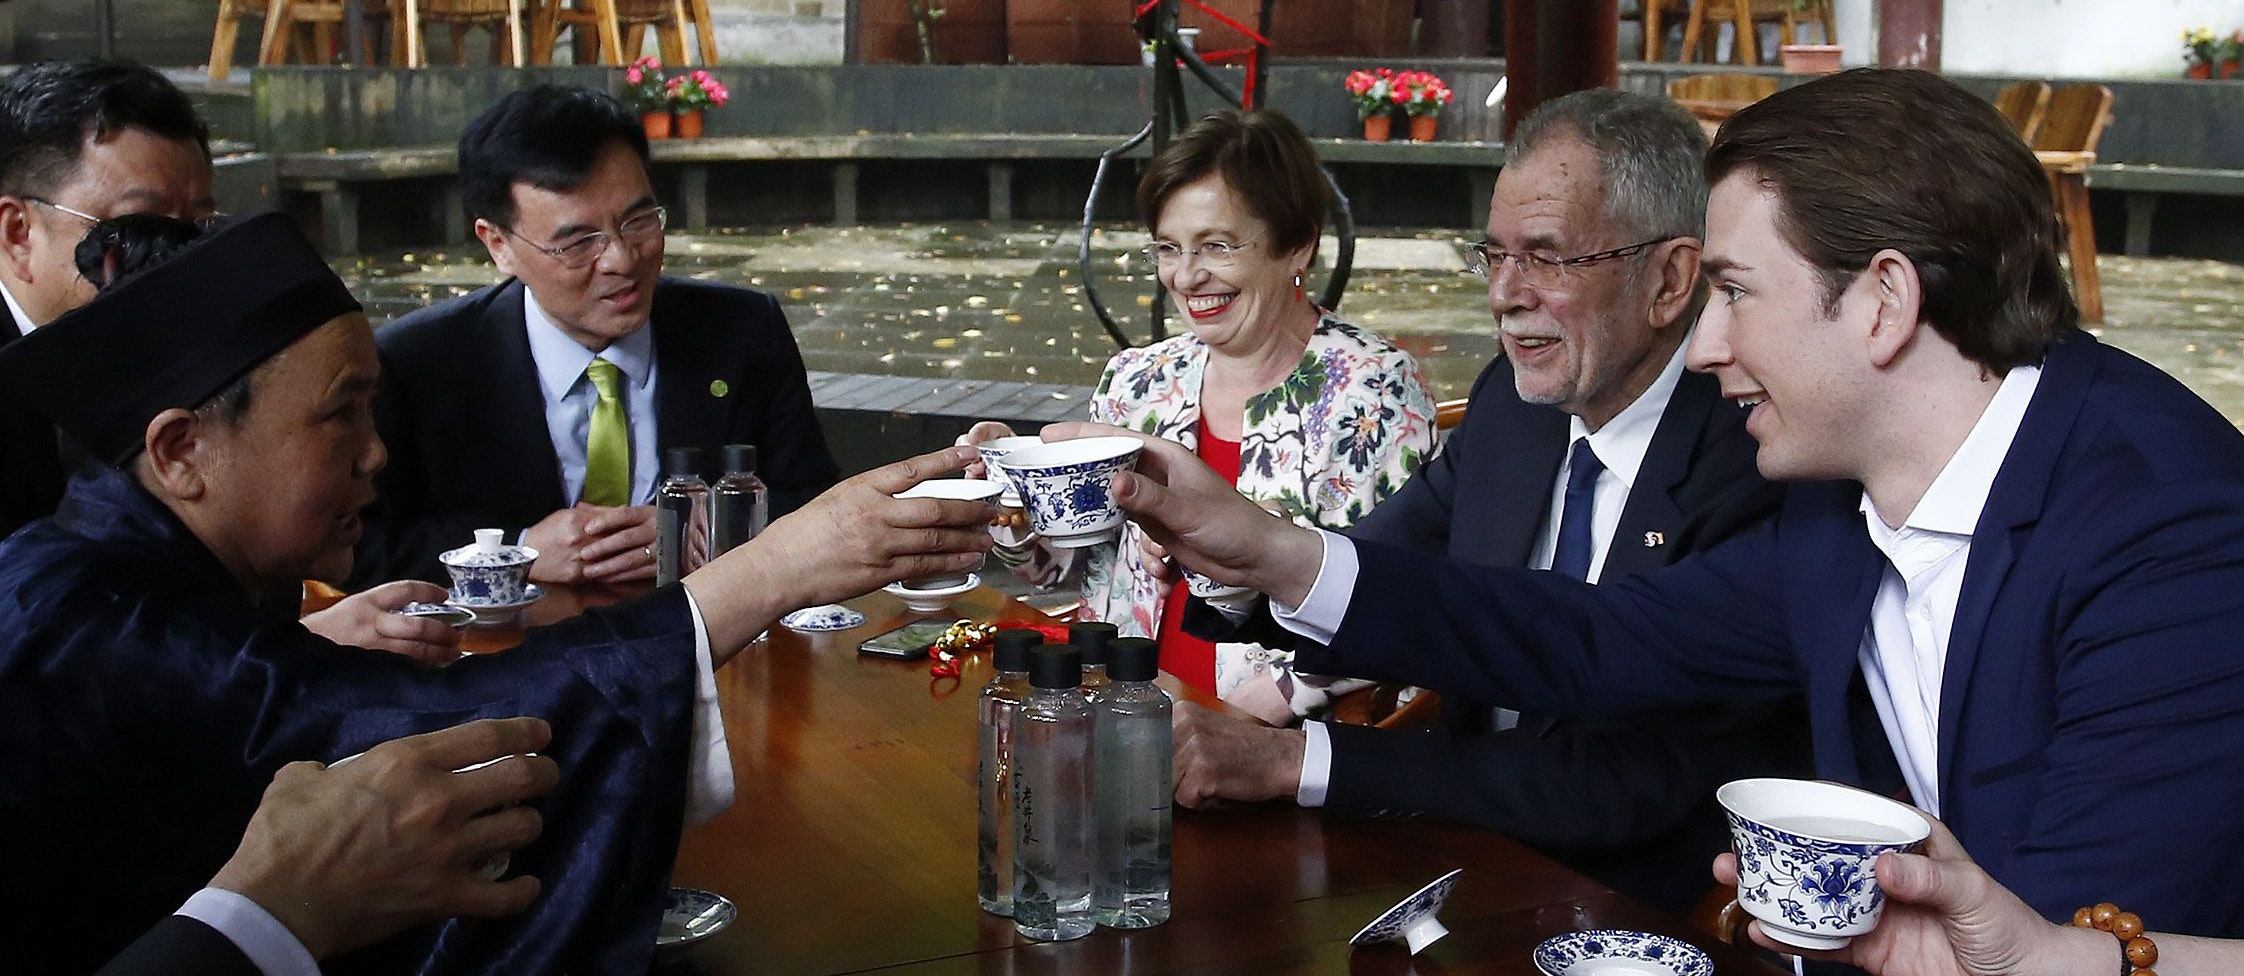 Doris Schmidauer, Bundespräsident Alexander Van der Bellen und Bundeskanzler Sebastian Kurz (r.) beim Besuch des Jianfu Palasts in China 2018